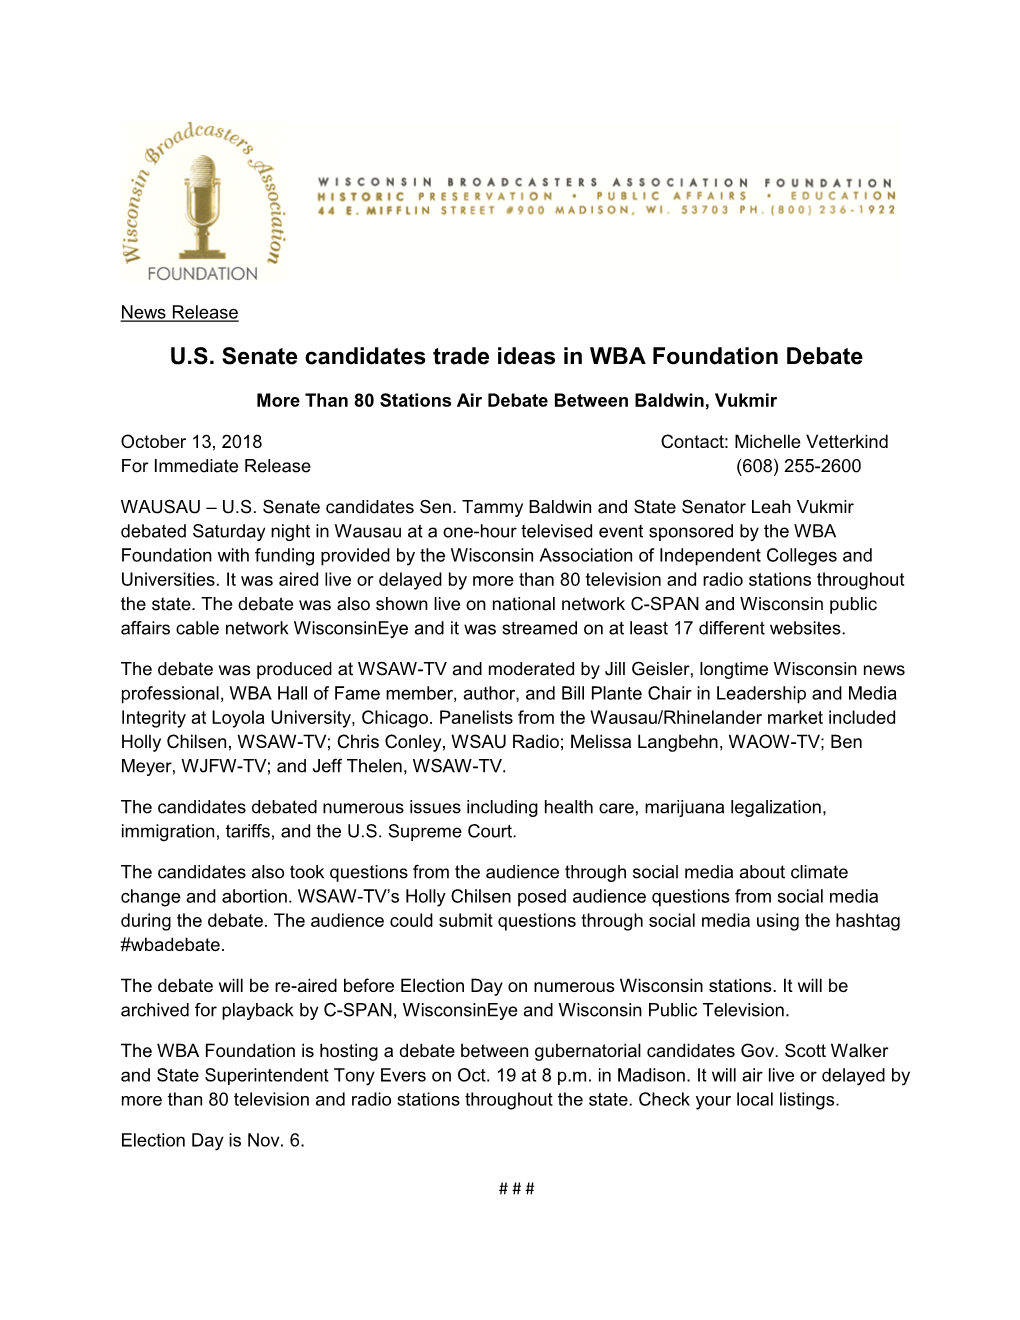 U.S. Senate Candidates Trade Ideas in WBA Foundation Debate